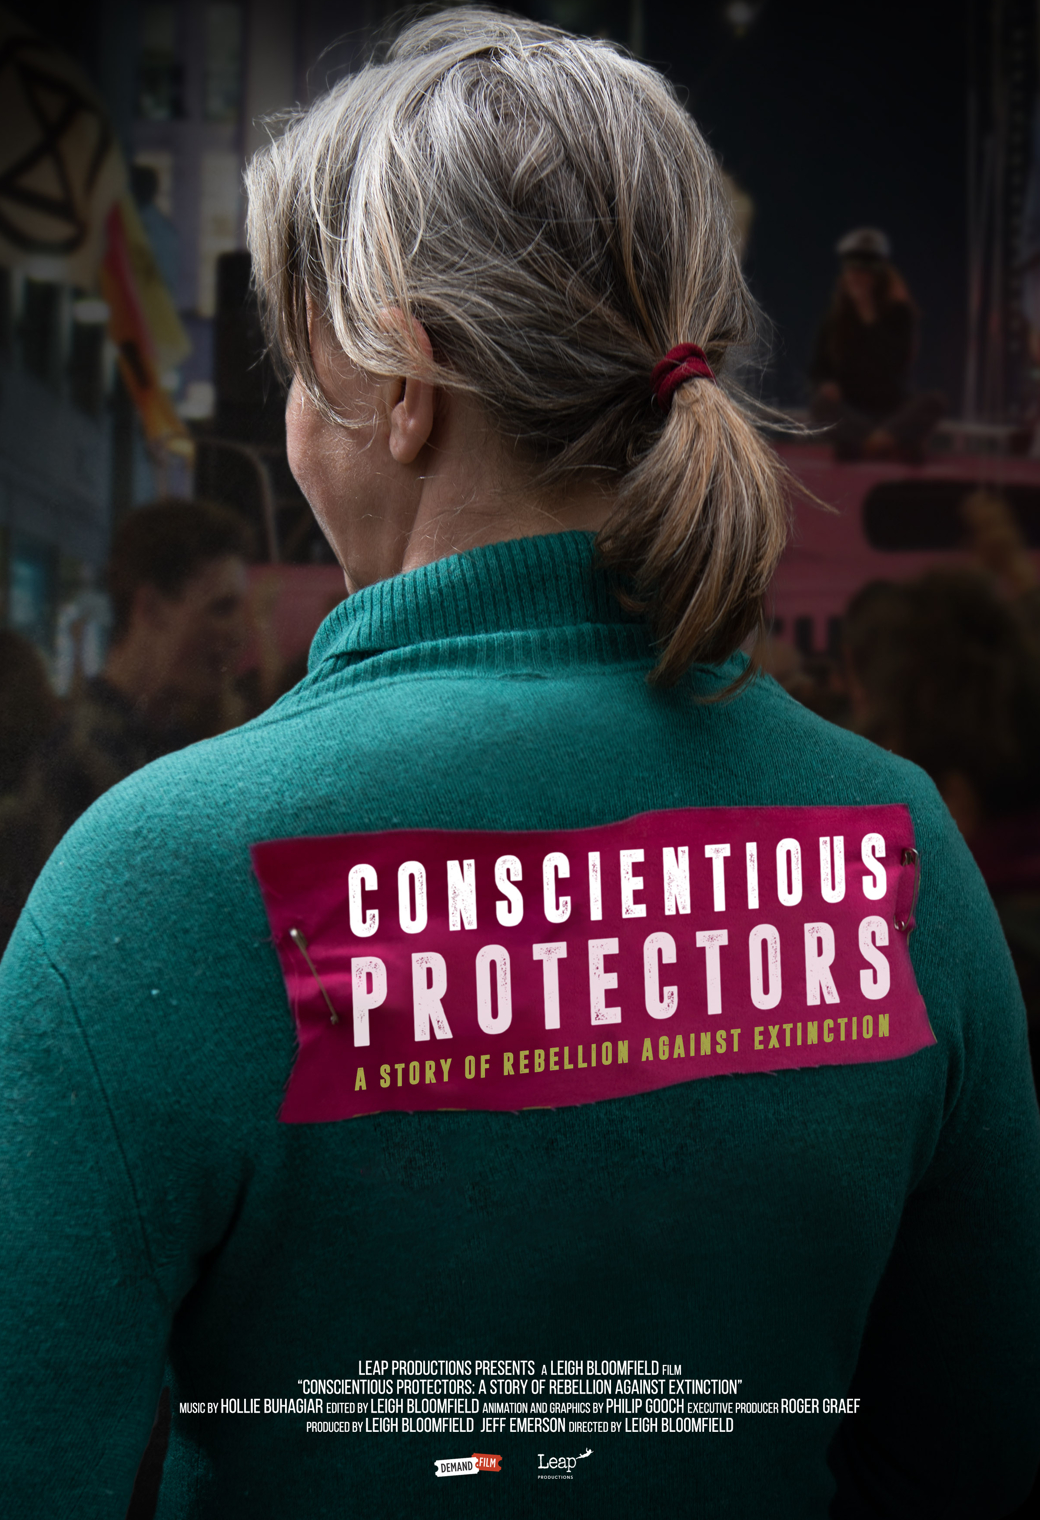 Conscientious Protectors: Extinction Rebellion